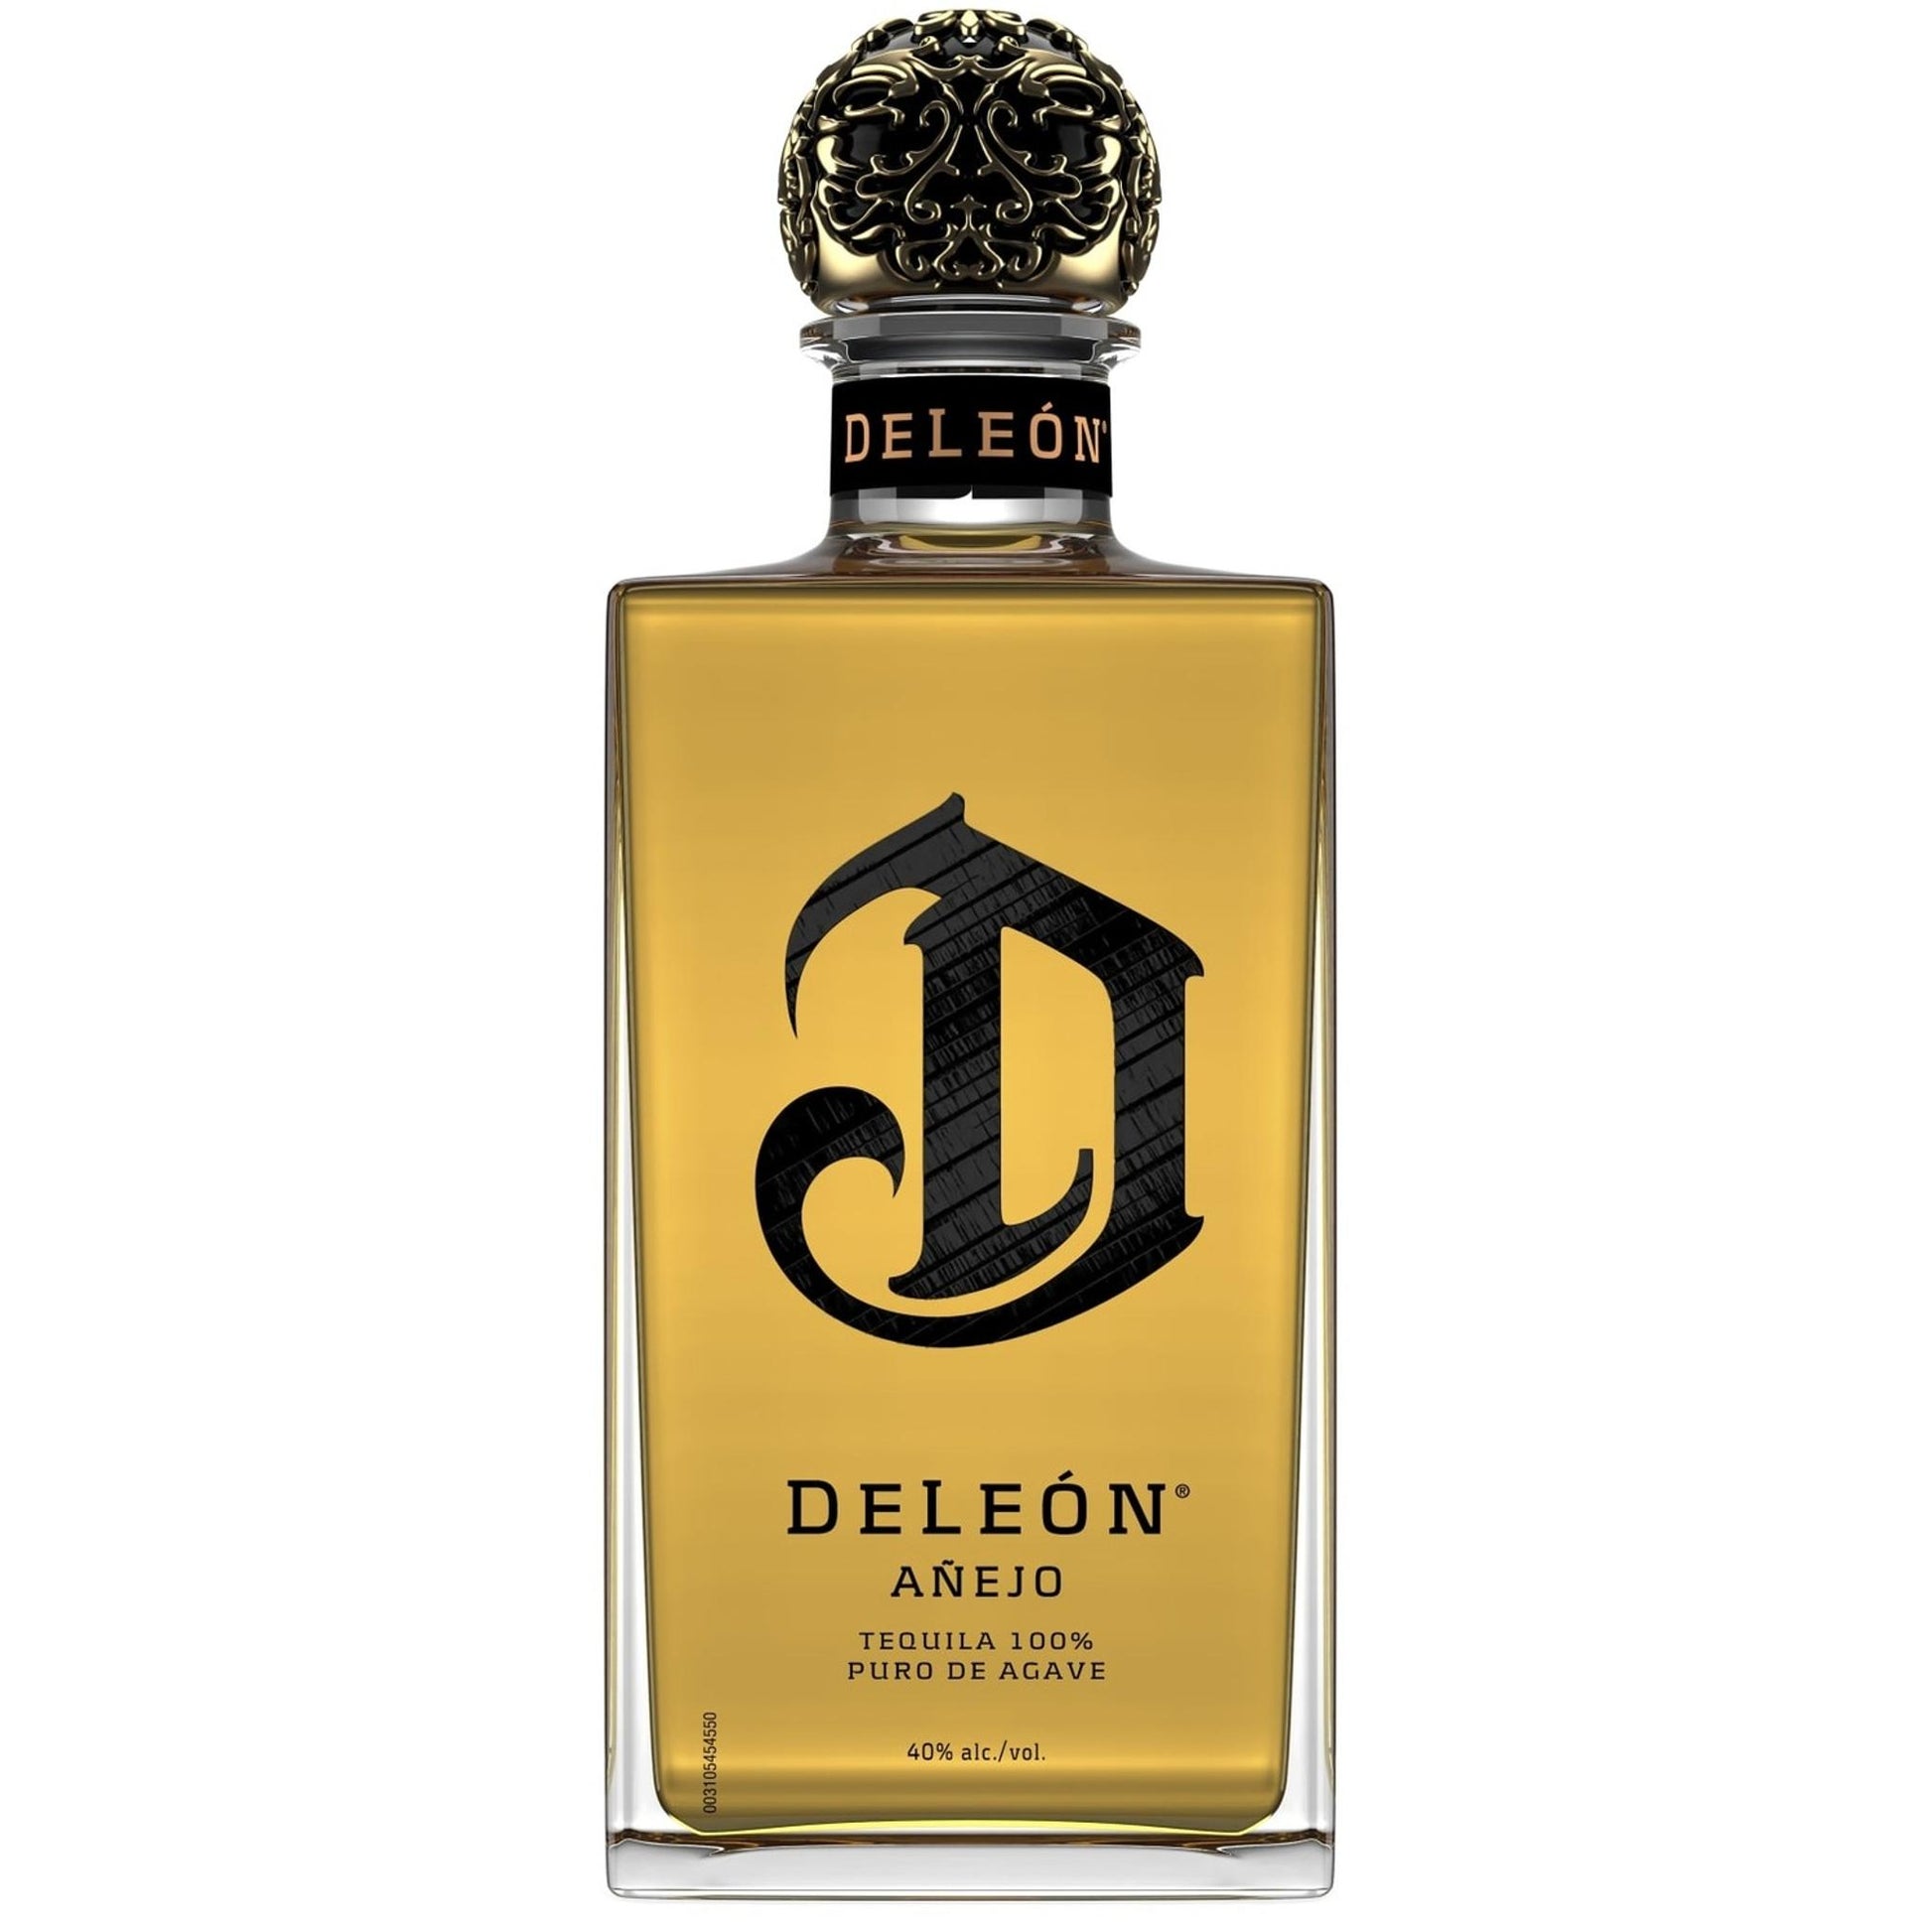 Deleon Tequila Anejo - Liquor Geeks